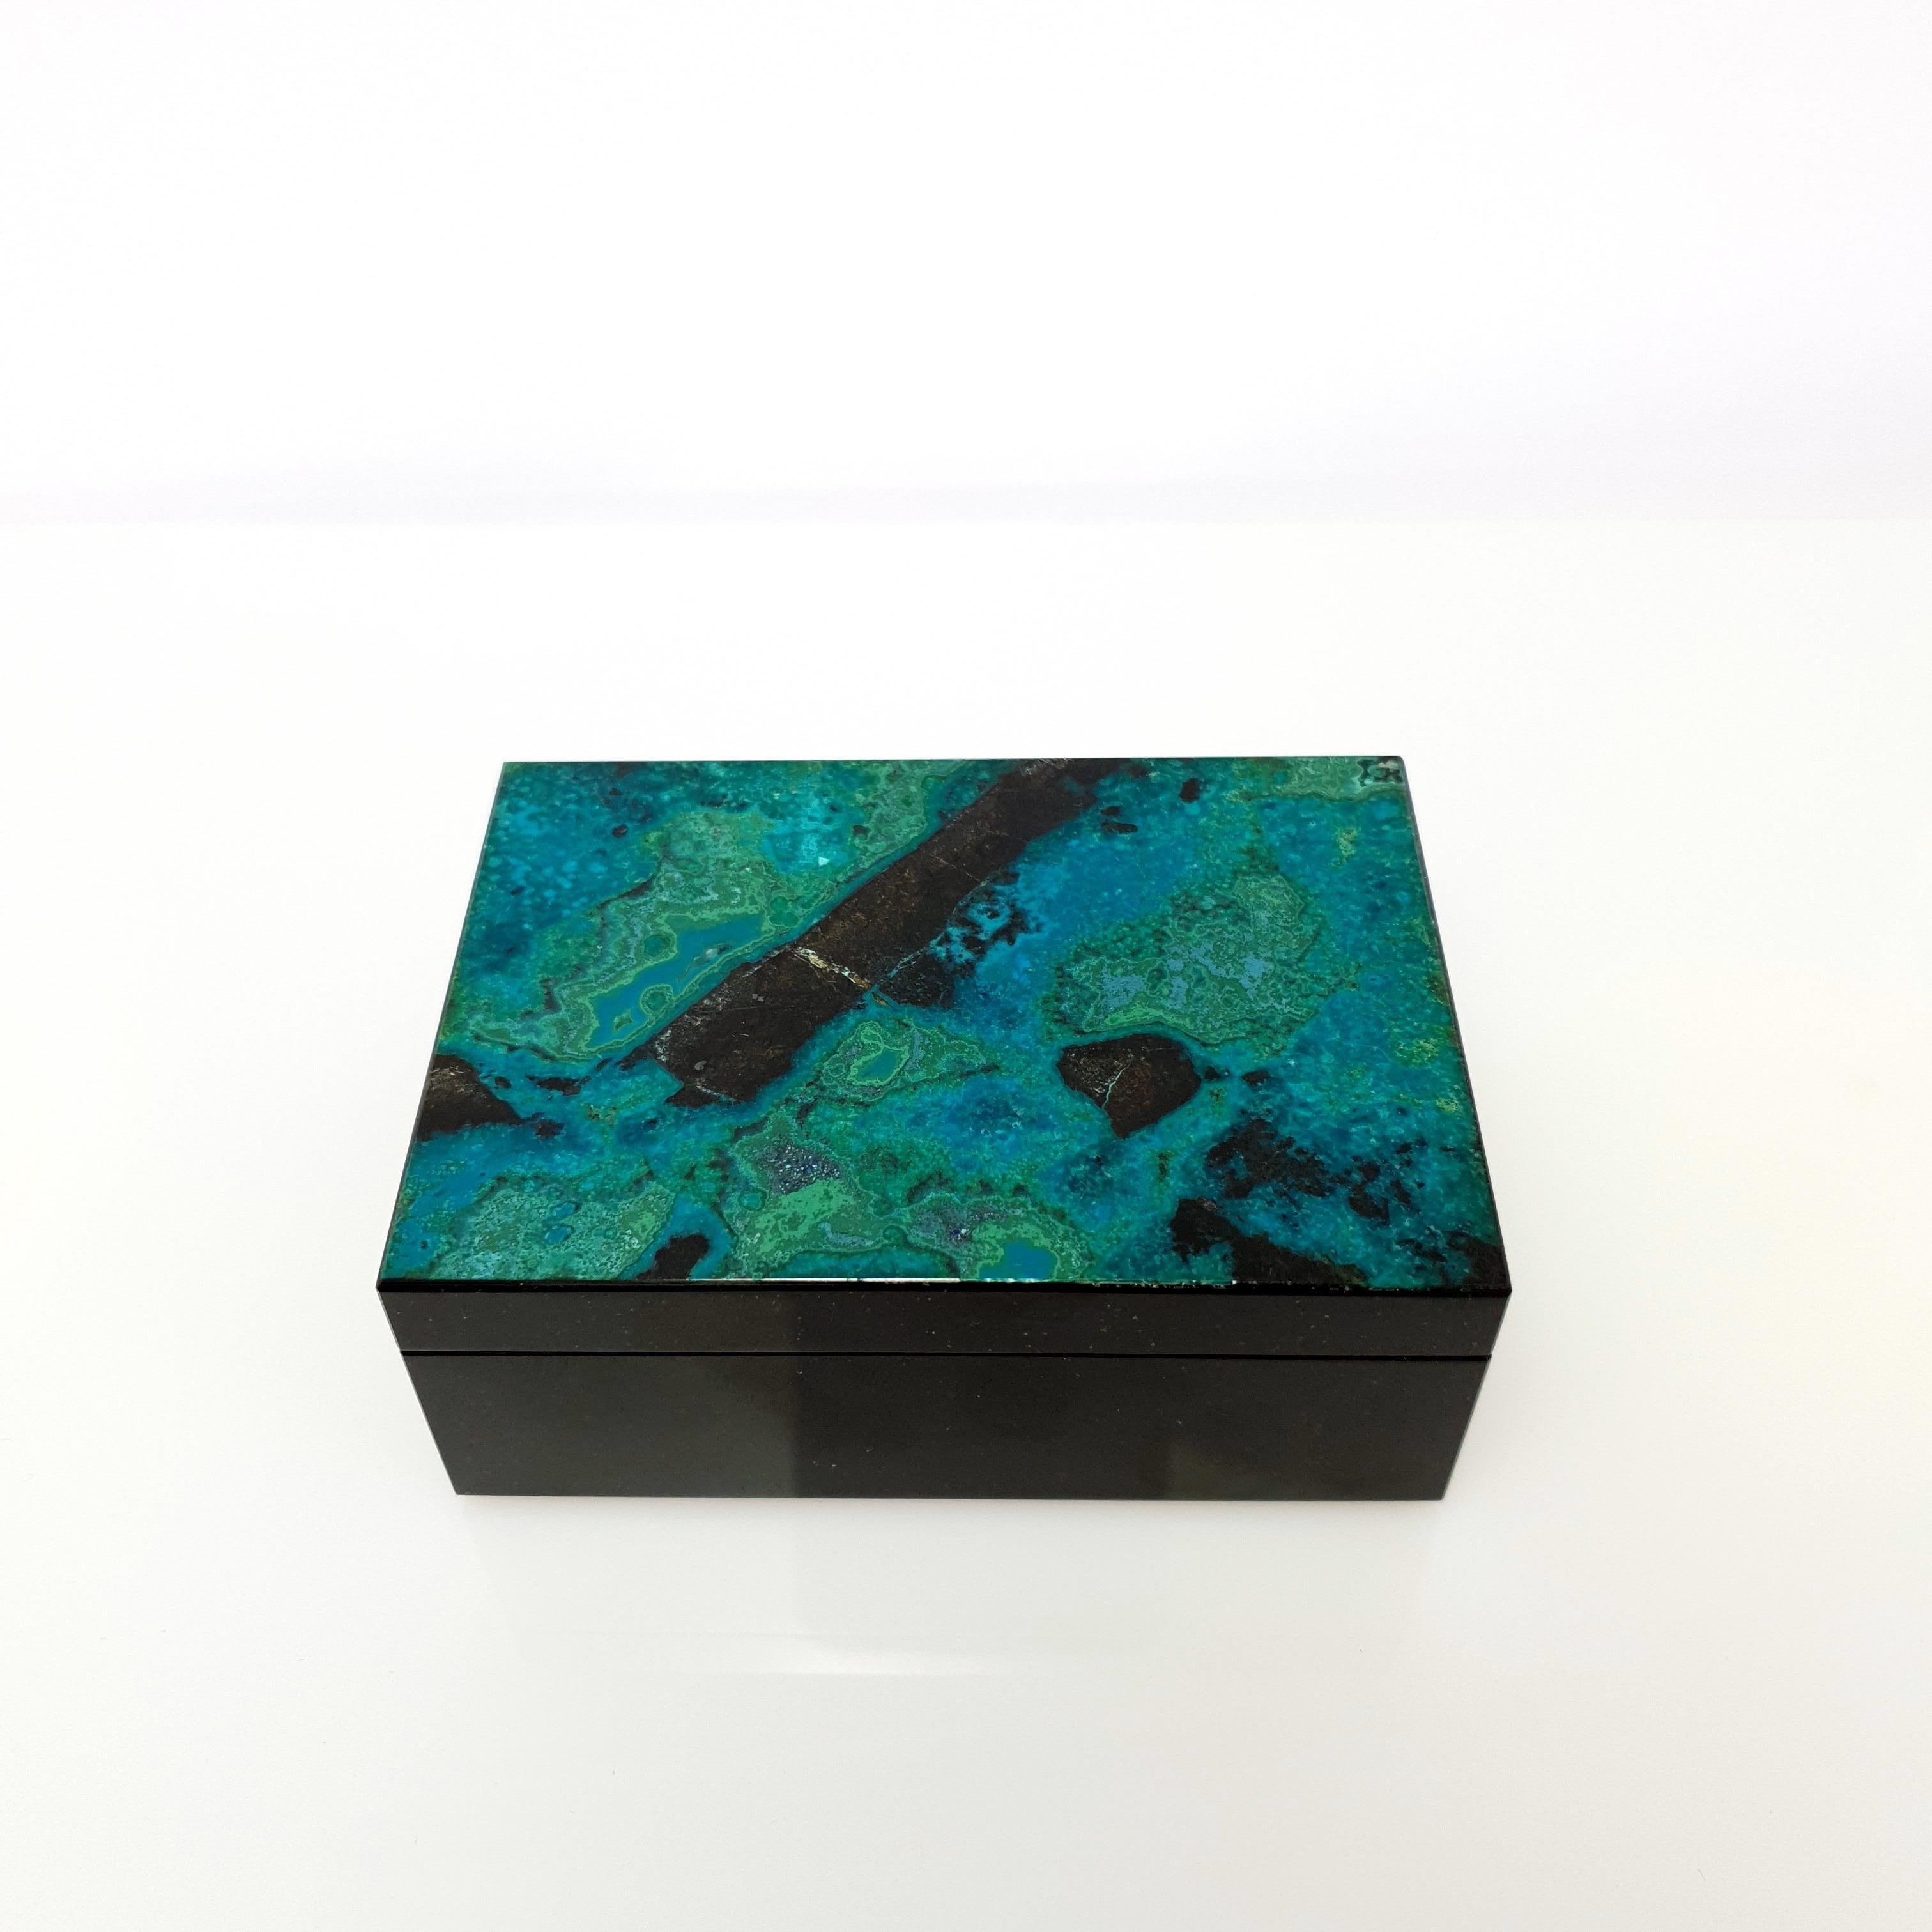 Eine handgefertigte natürliche blau-grüne Chrysokoll & Malachit dekorative Schmuck-Box.
Das Muster sieht aus wie ein kunstvolles Gemälde der Natur.
Es ist zu betonen, dass die Deckplatte aus einem Stück und nicht aus mehreren Mosaiken